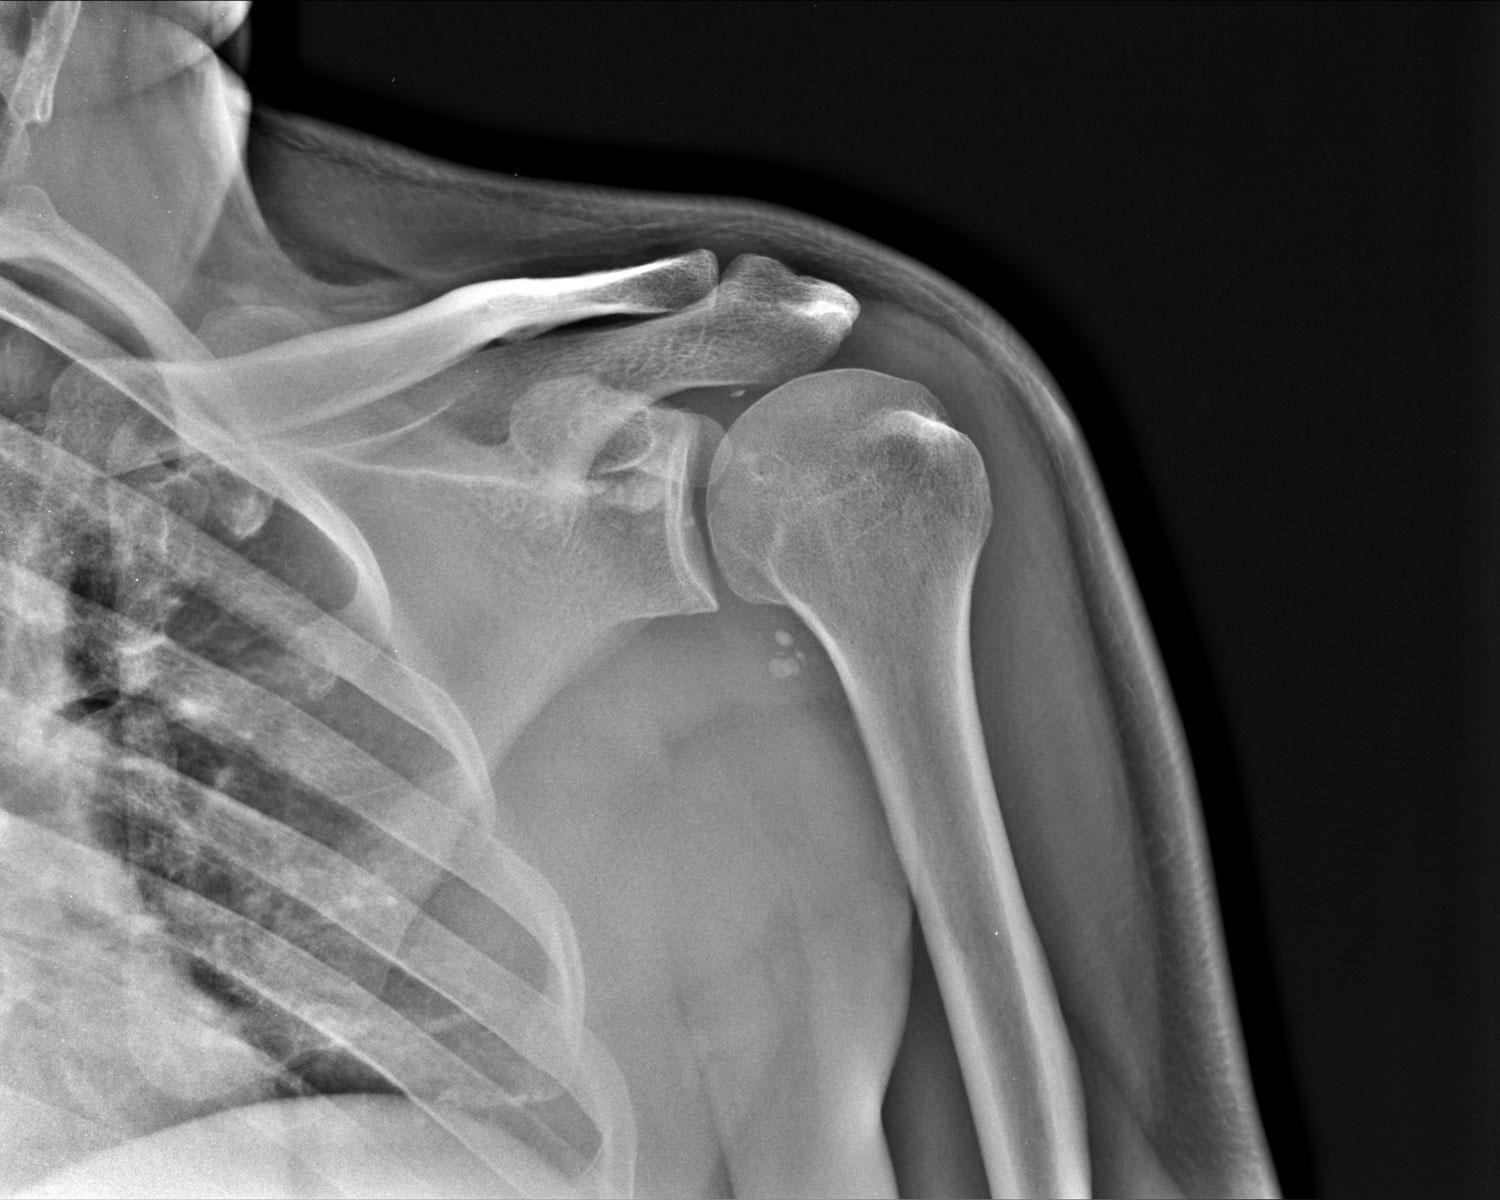 Снимок КТ плечевого сустава